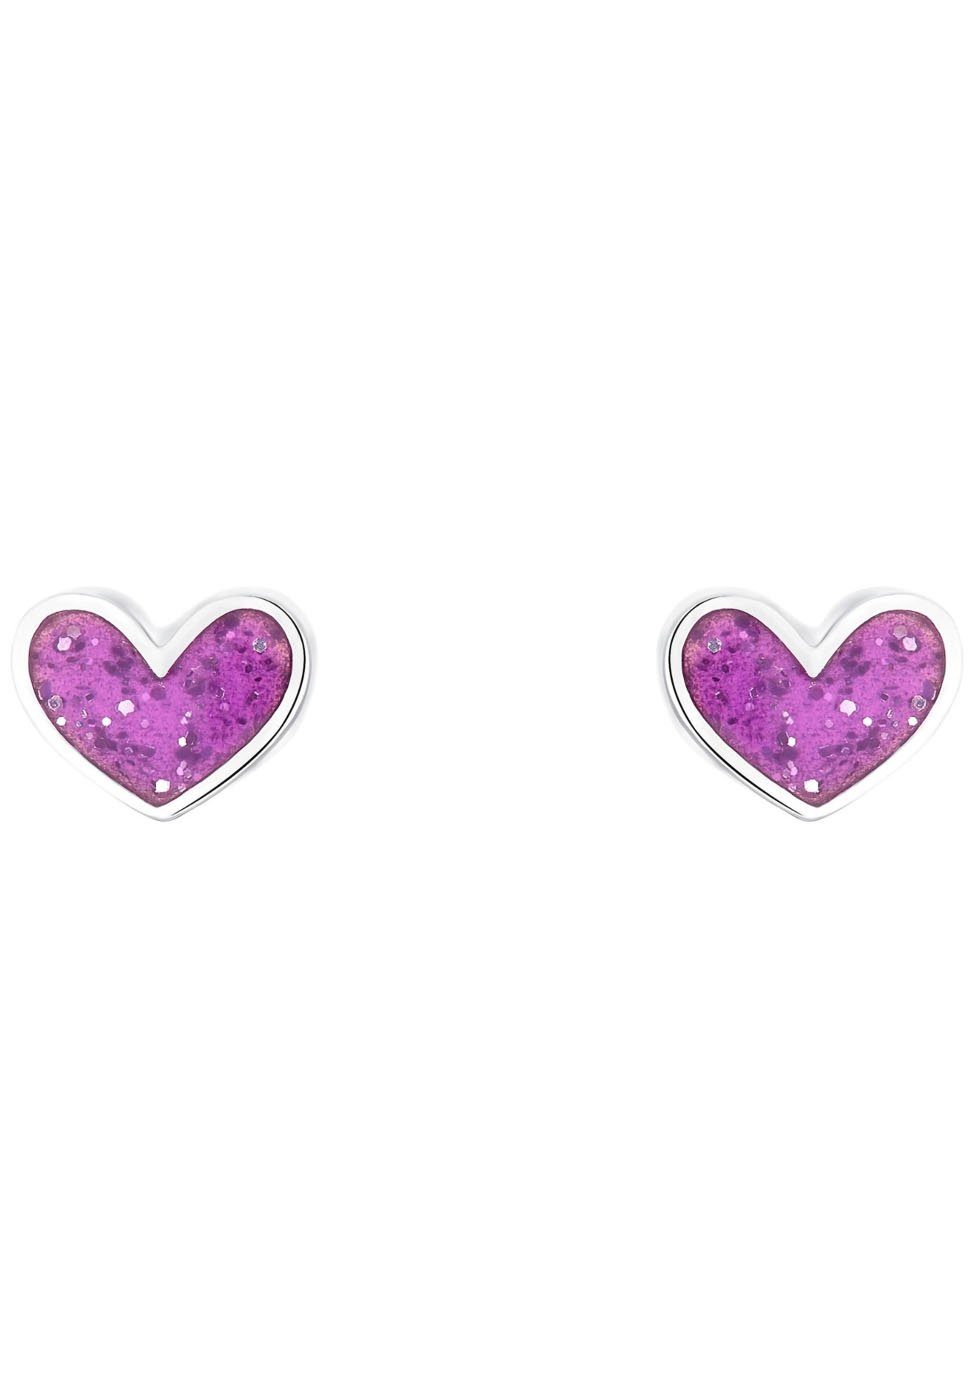 Prinzessin Lillifee Paar Ohrstecker Purple Heart, 2036441, Ohrstecker für  Mädchen mit Herz-Motiv von der Marke Prinzessin Lillifee